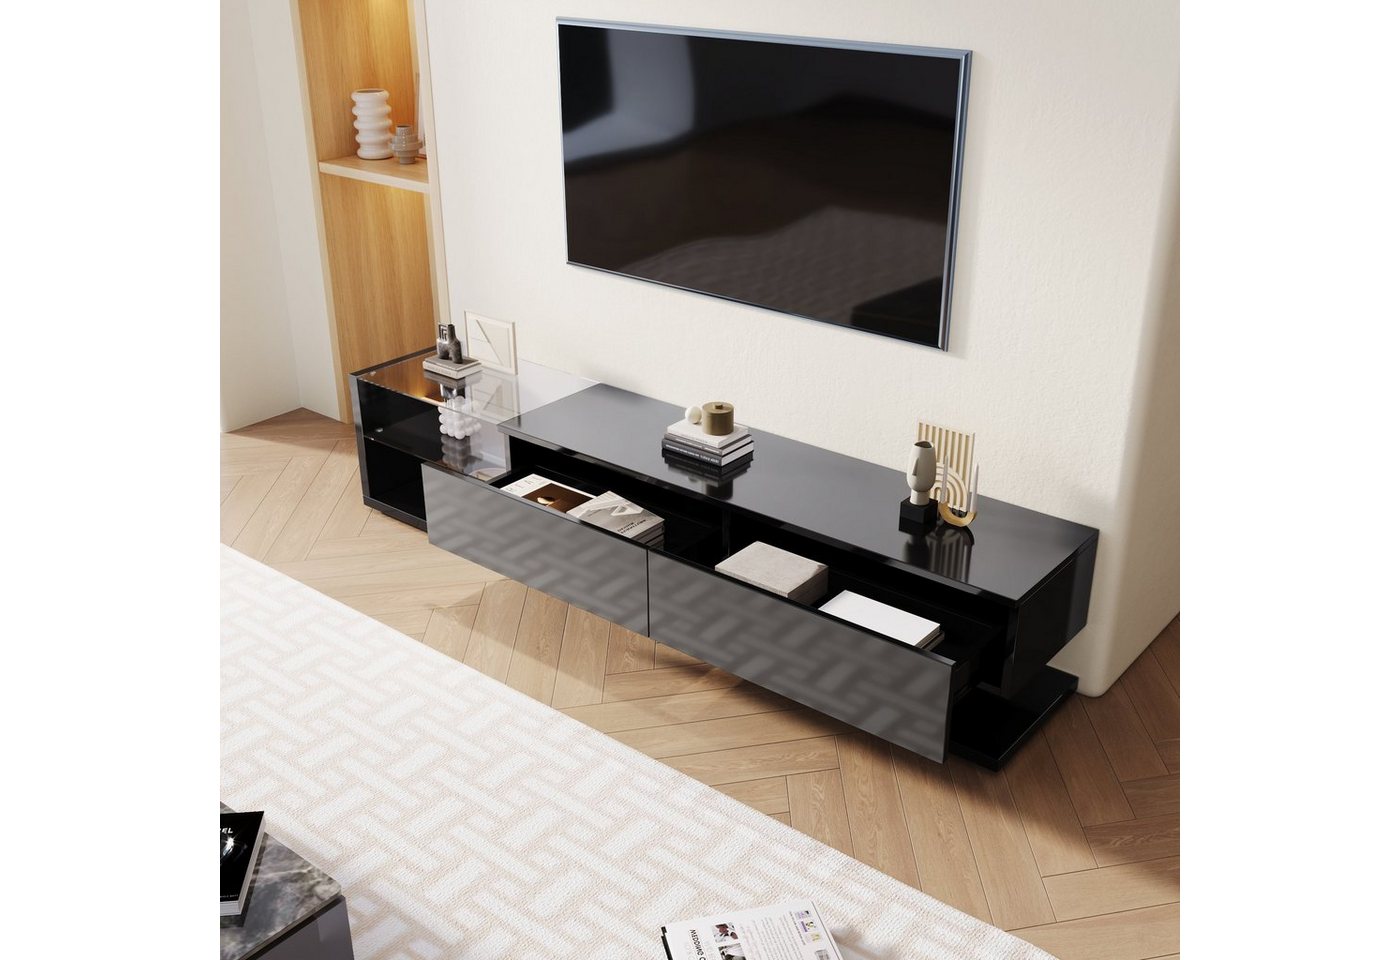 EXTSUD TV-Schrank TV-Schränke, Lowboards, Hochglanz-Wohnzimmermöbel verbindet natürlichen, rustikalen Stil mit modernem Design von EXTSUD